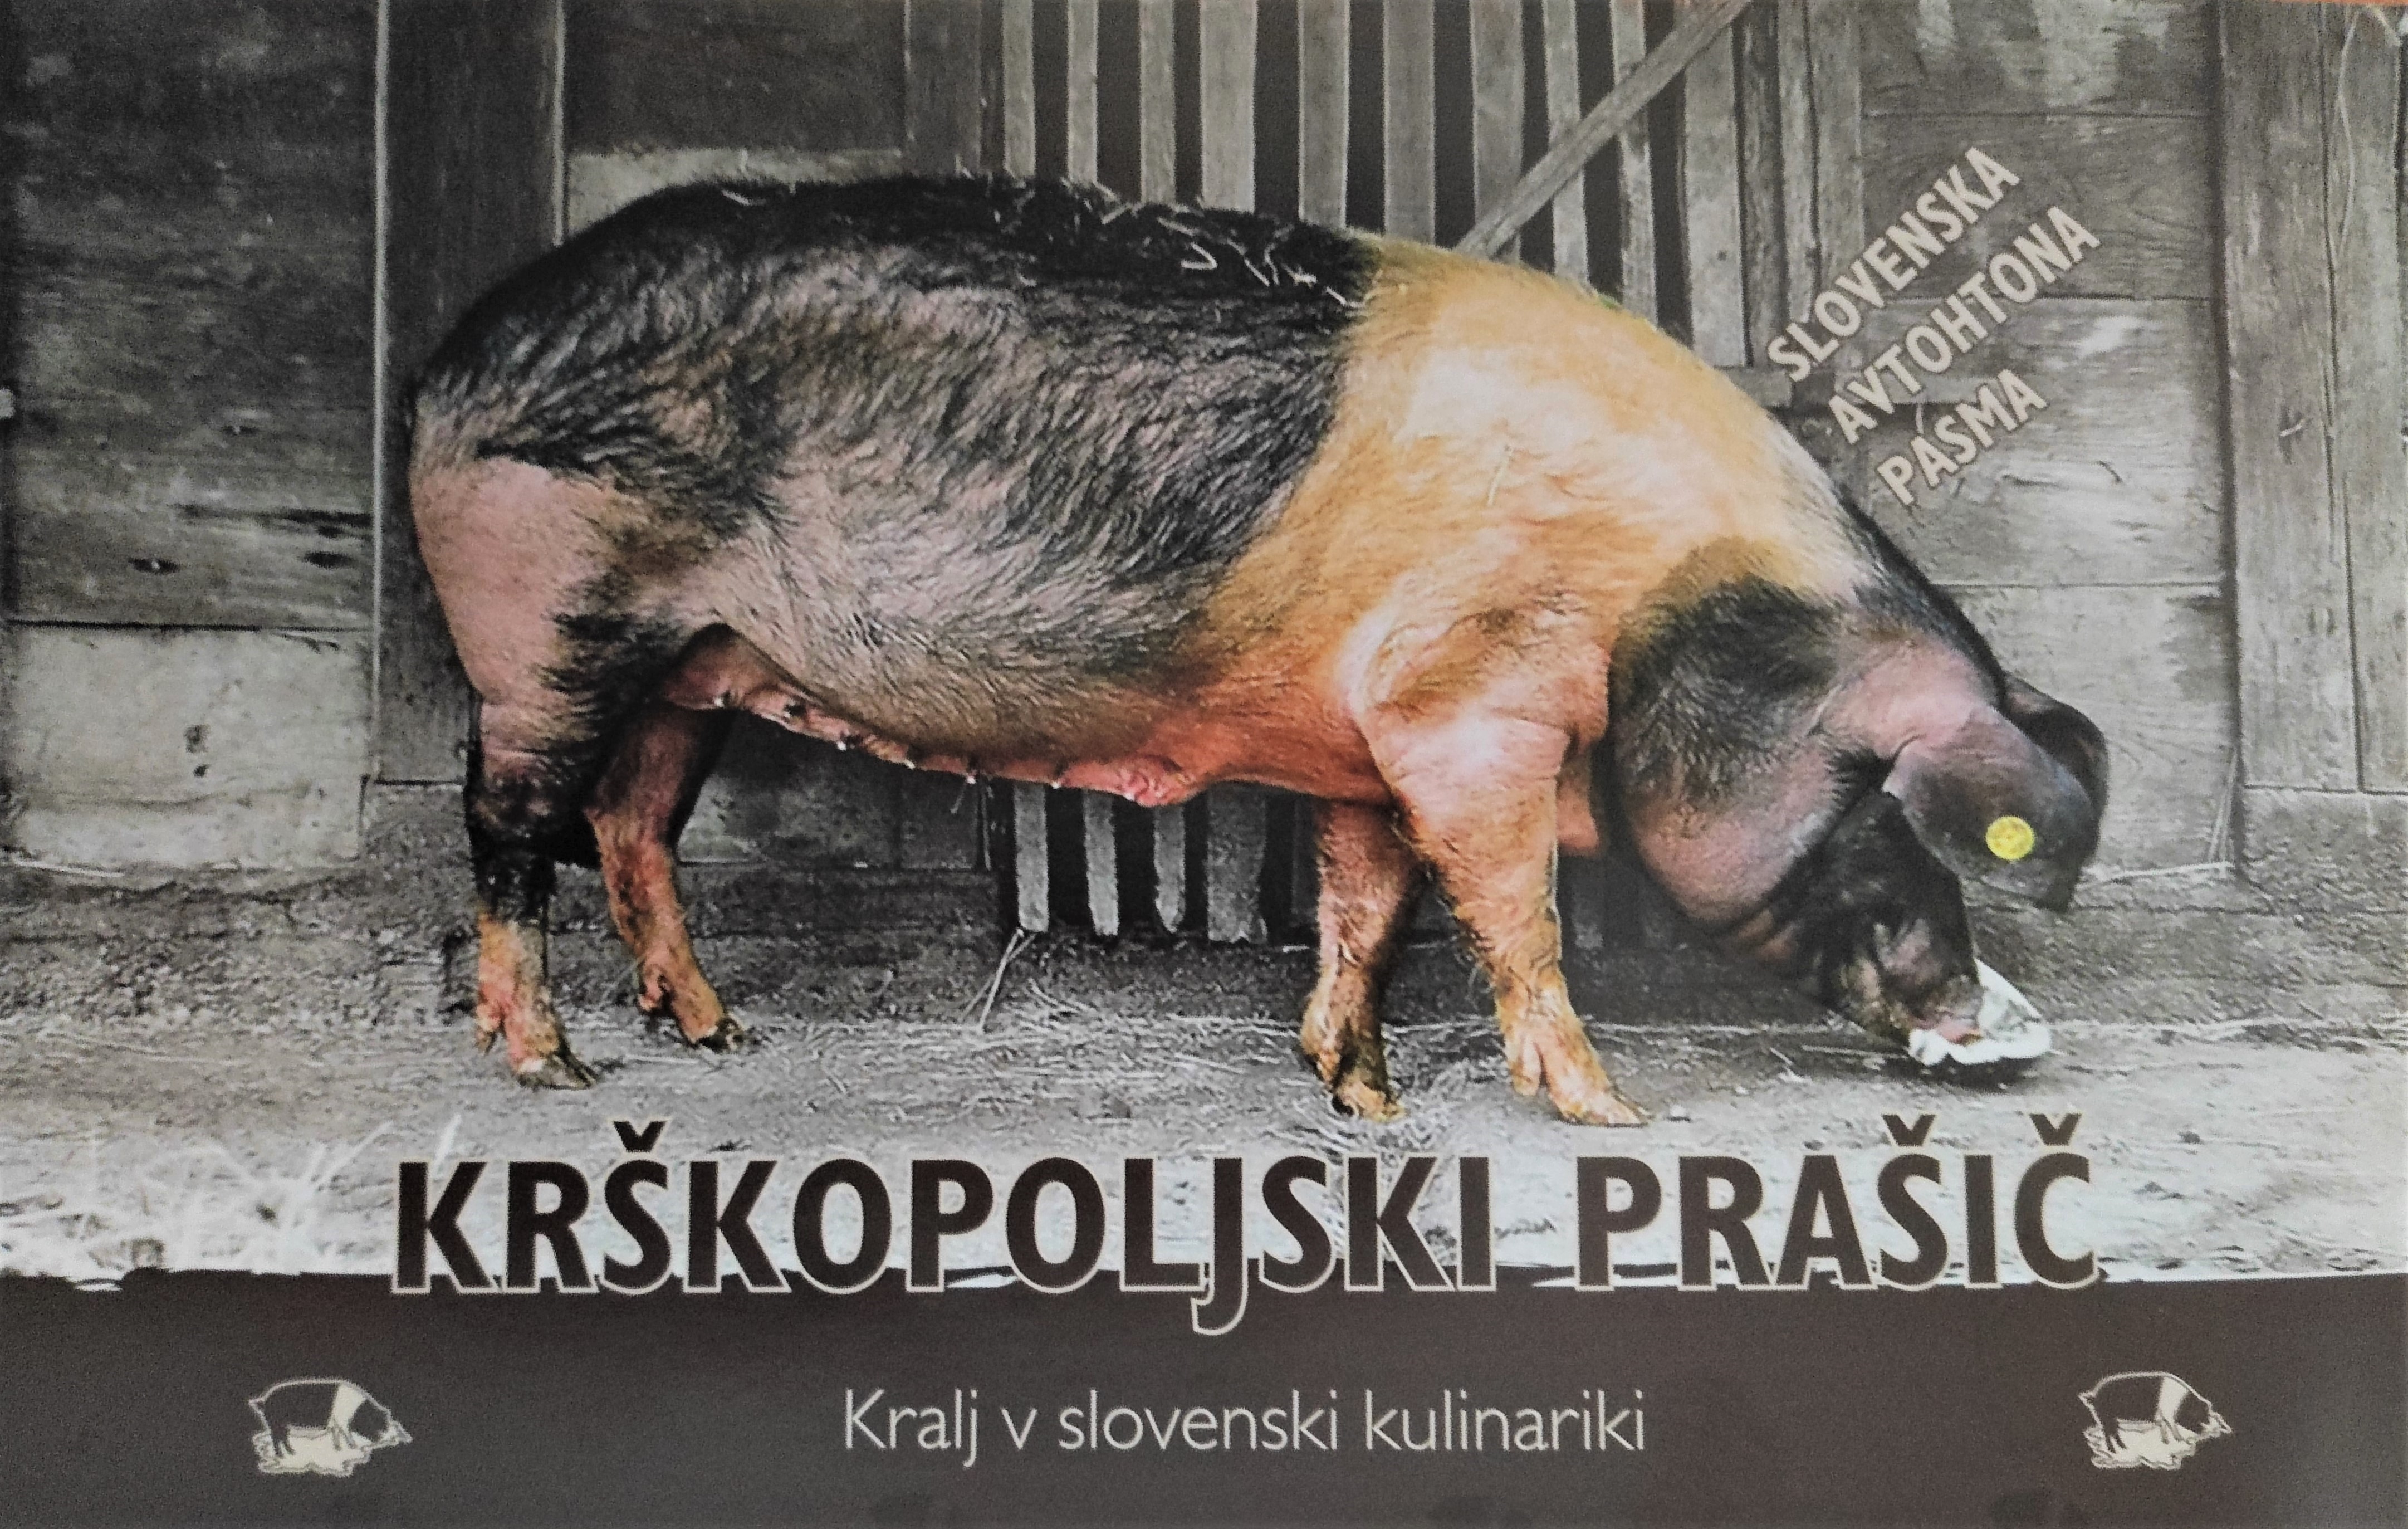 Slika 3: Krškopoljski prašič. Slovenska avtohtona pasma Društva rejcev krškopoljskih prašičev